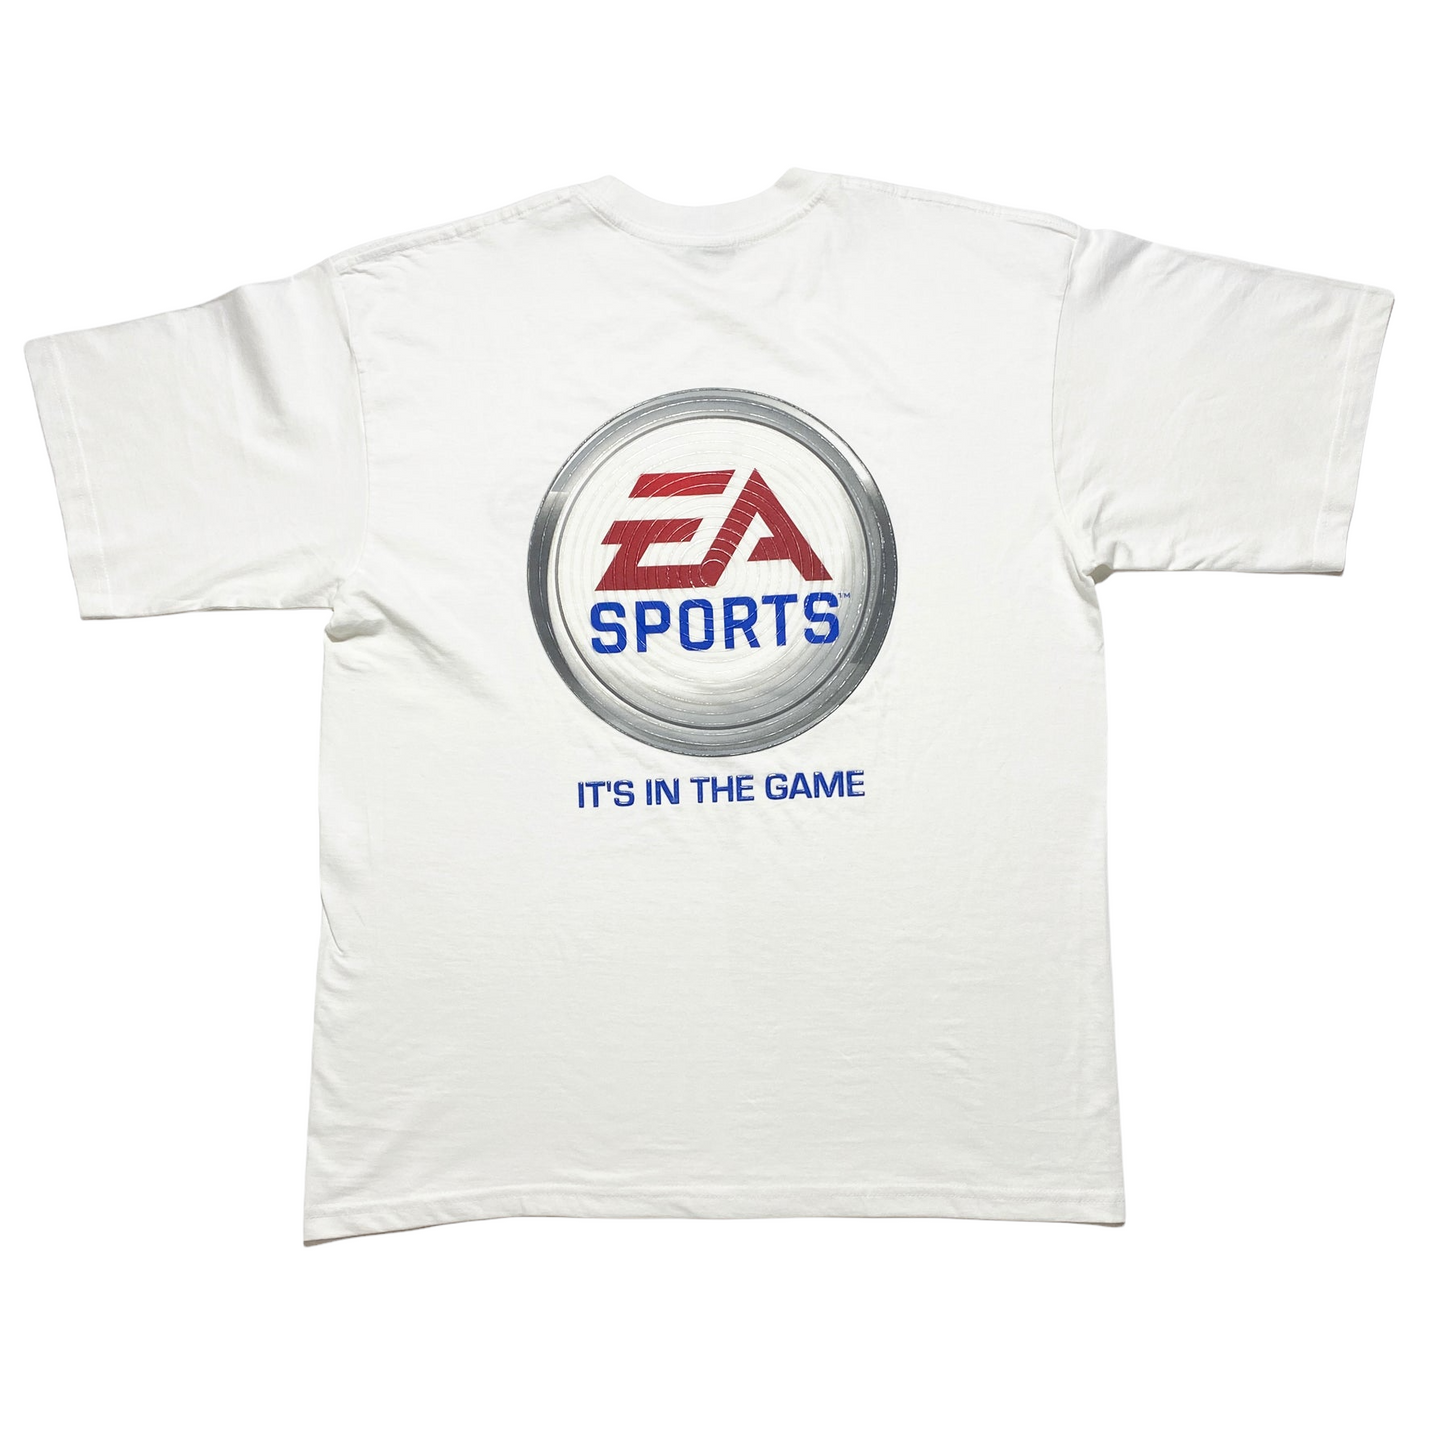 00's EA Sports Vintage Tee (S)